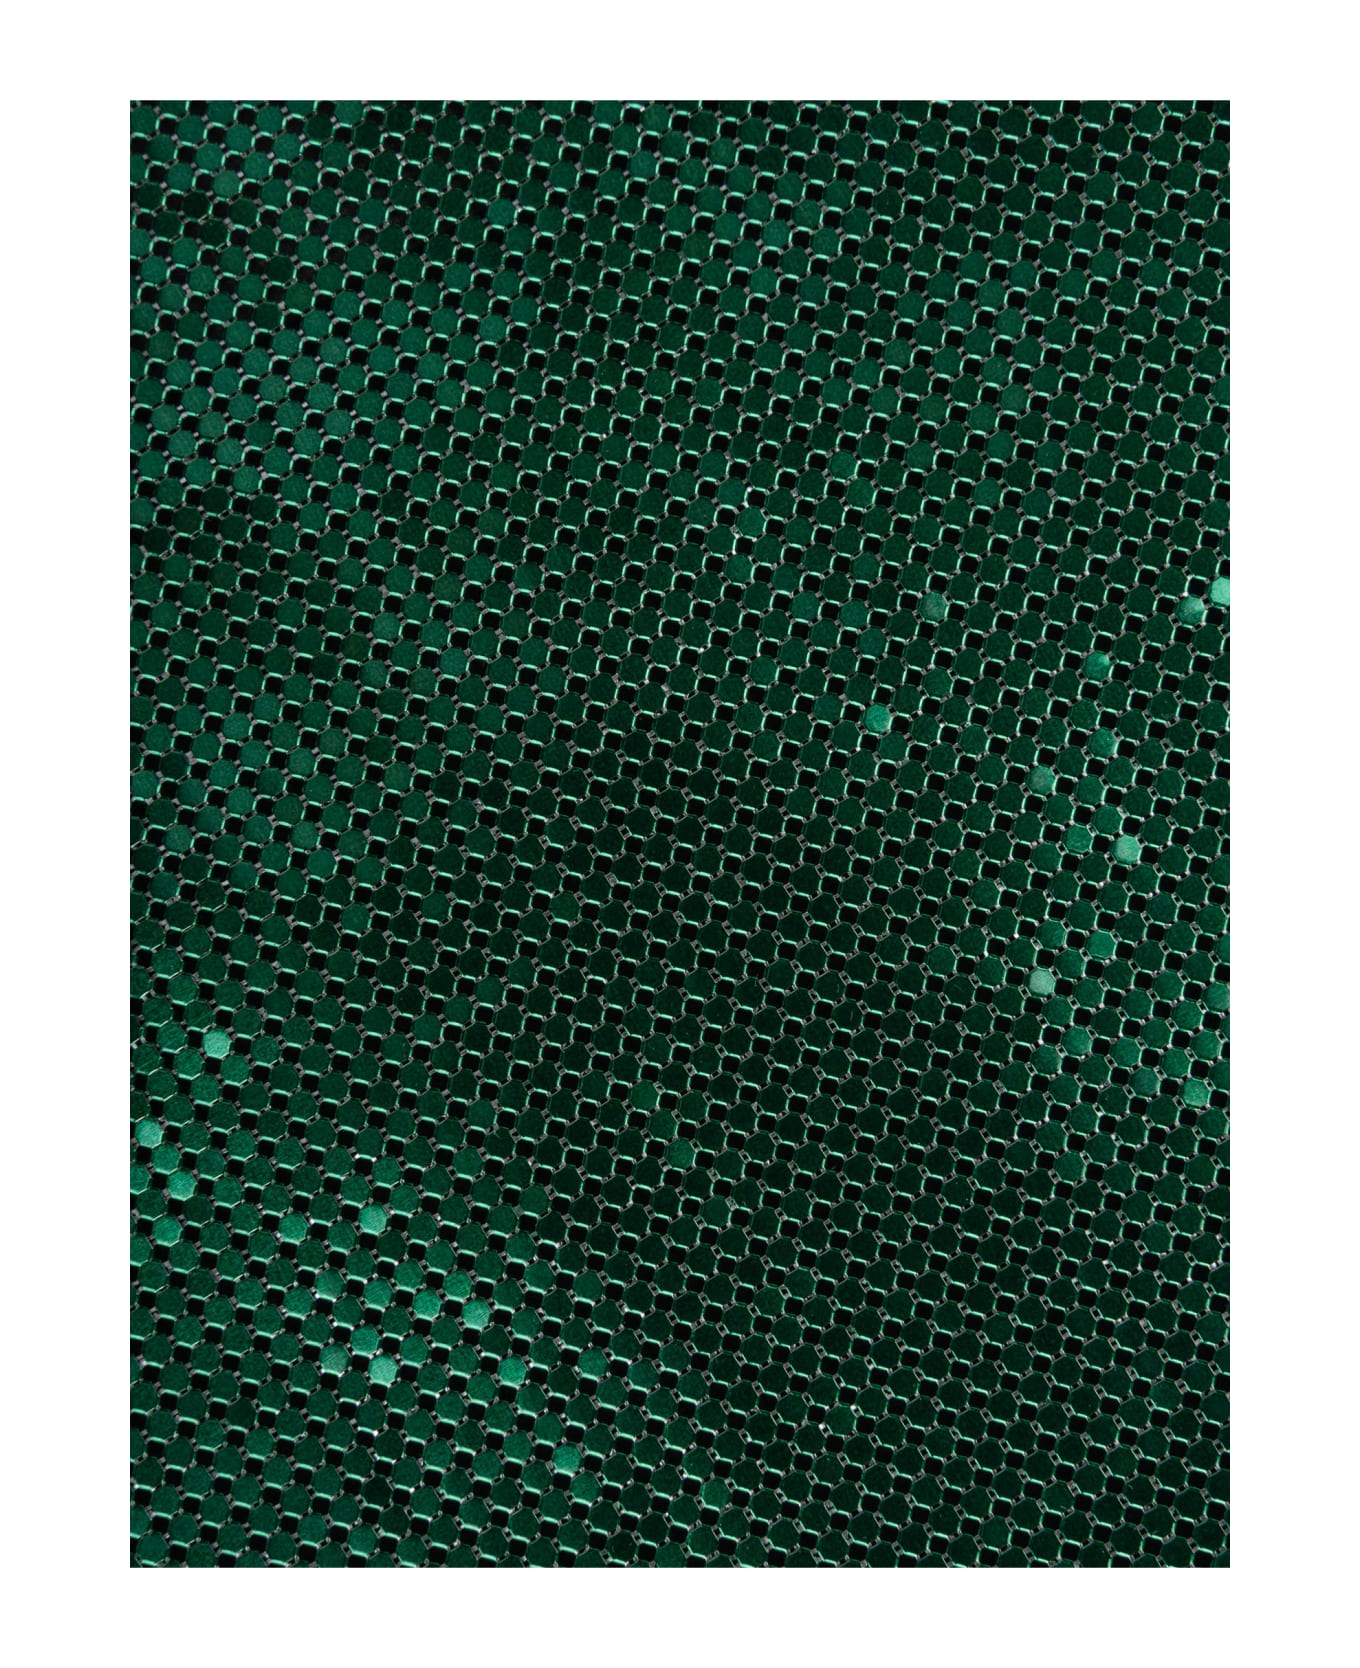 Paco Rabanne Pixel Shoulder Bag - Emerald